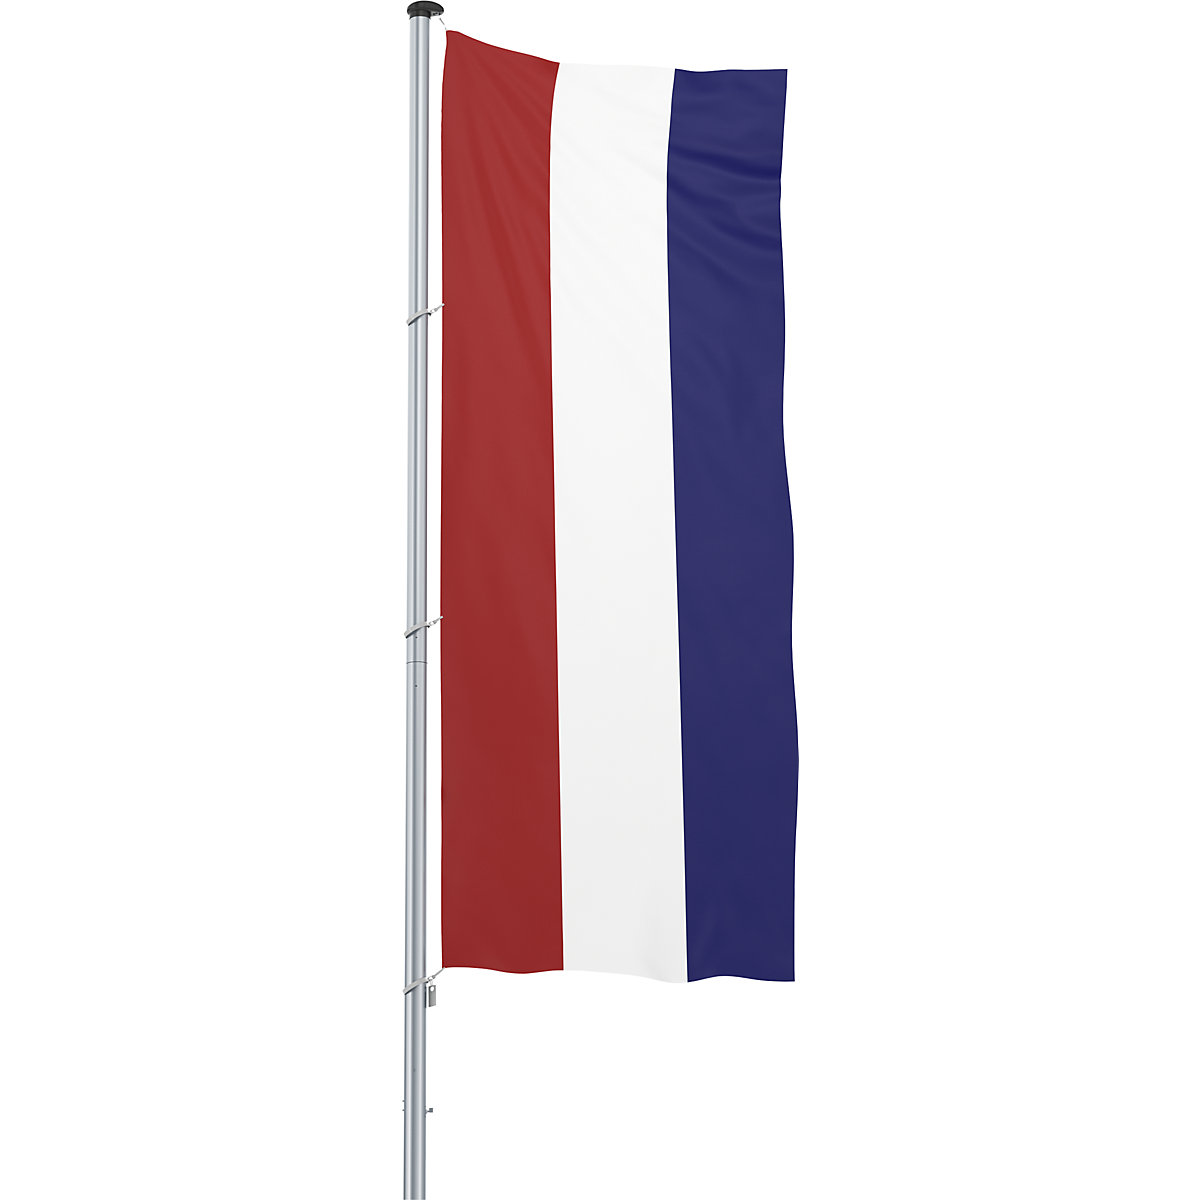 Mannus – Bandera para izar/bandera del país, formato 1,2 x 3 m, Países Bajos